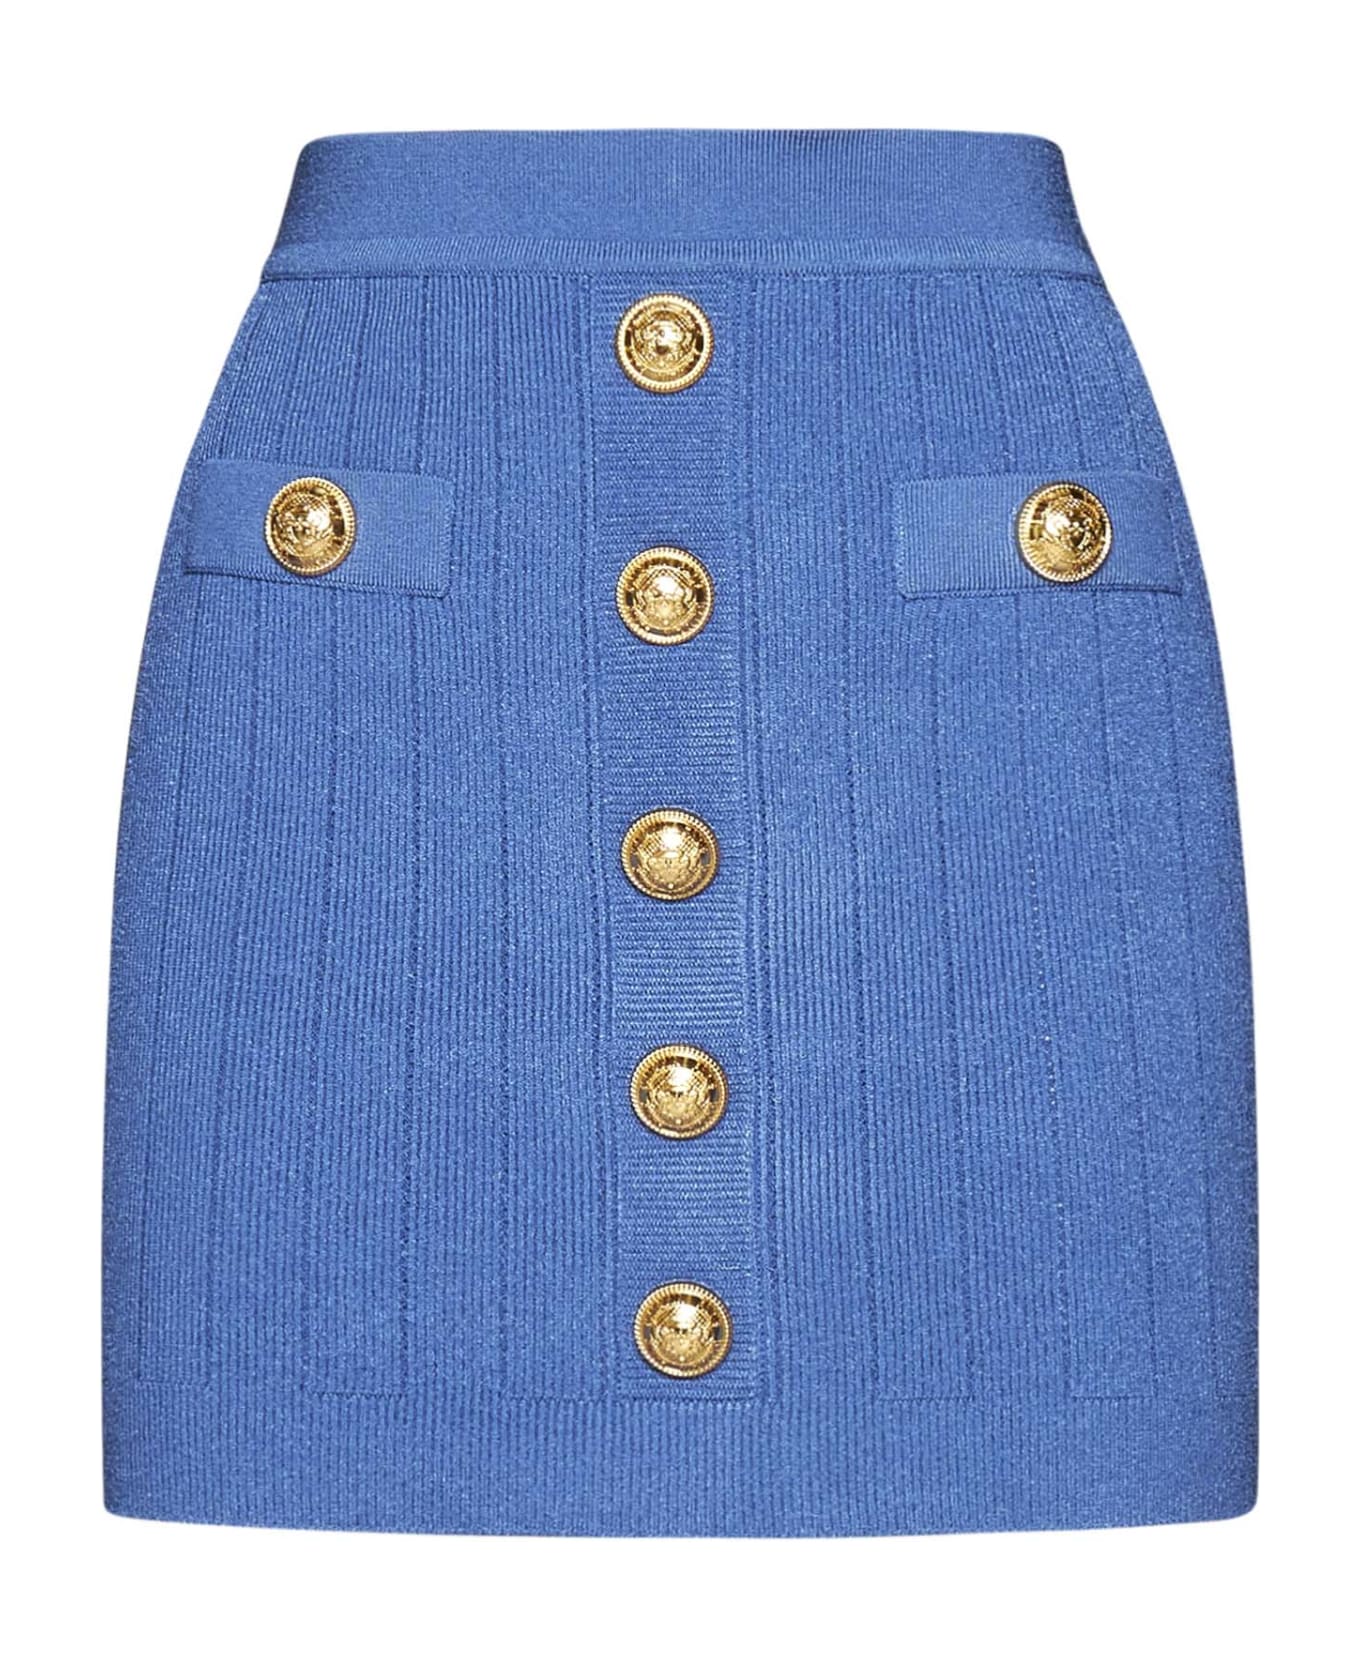 Balmain Skirt - Bleu denim